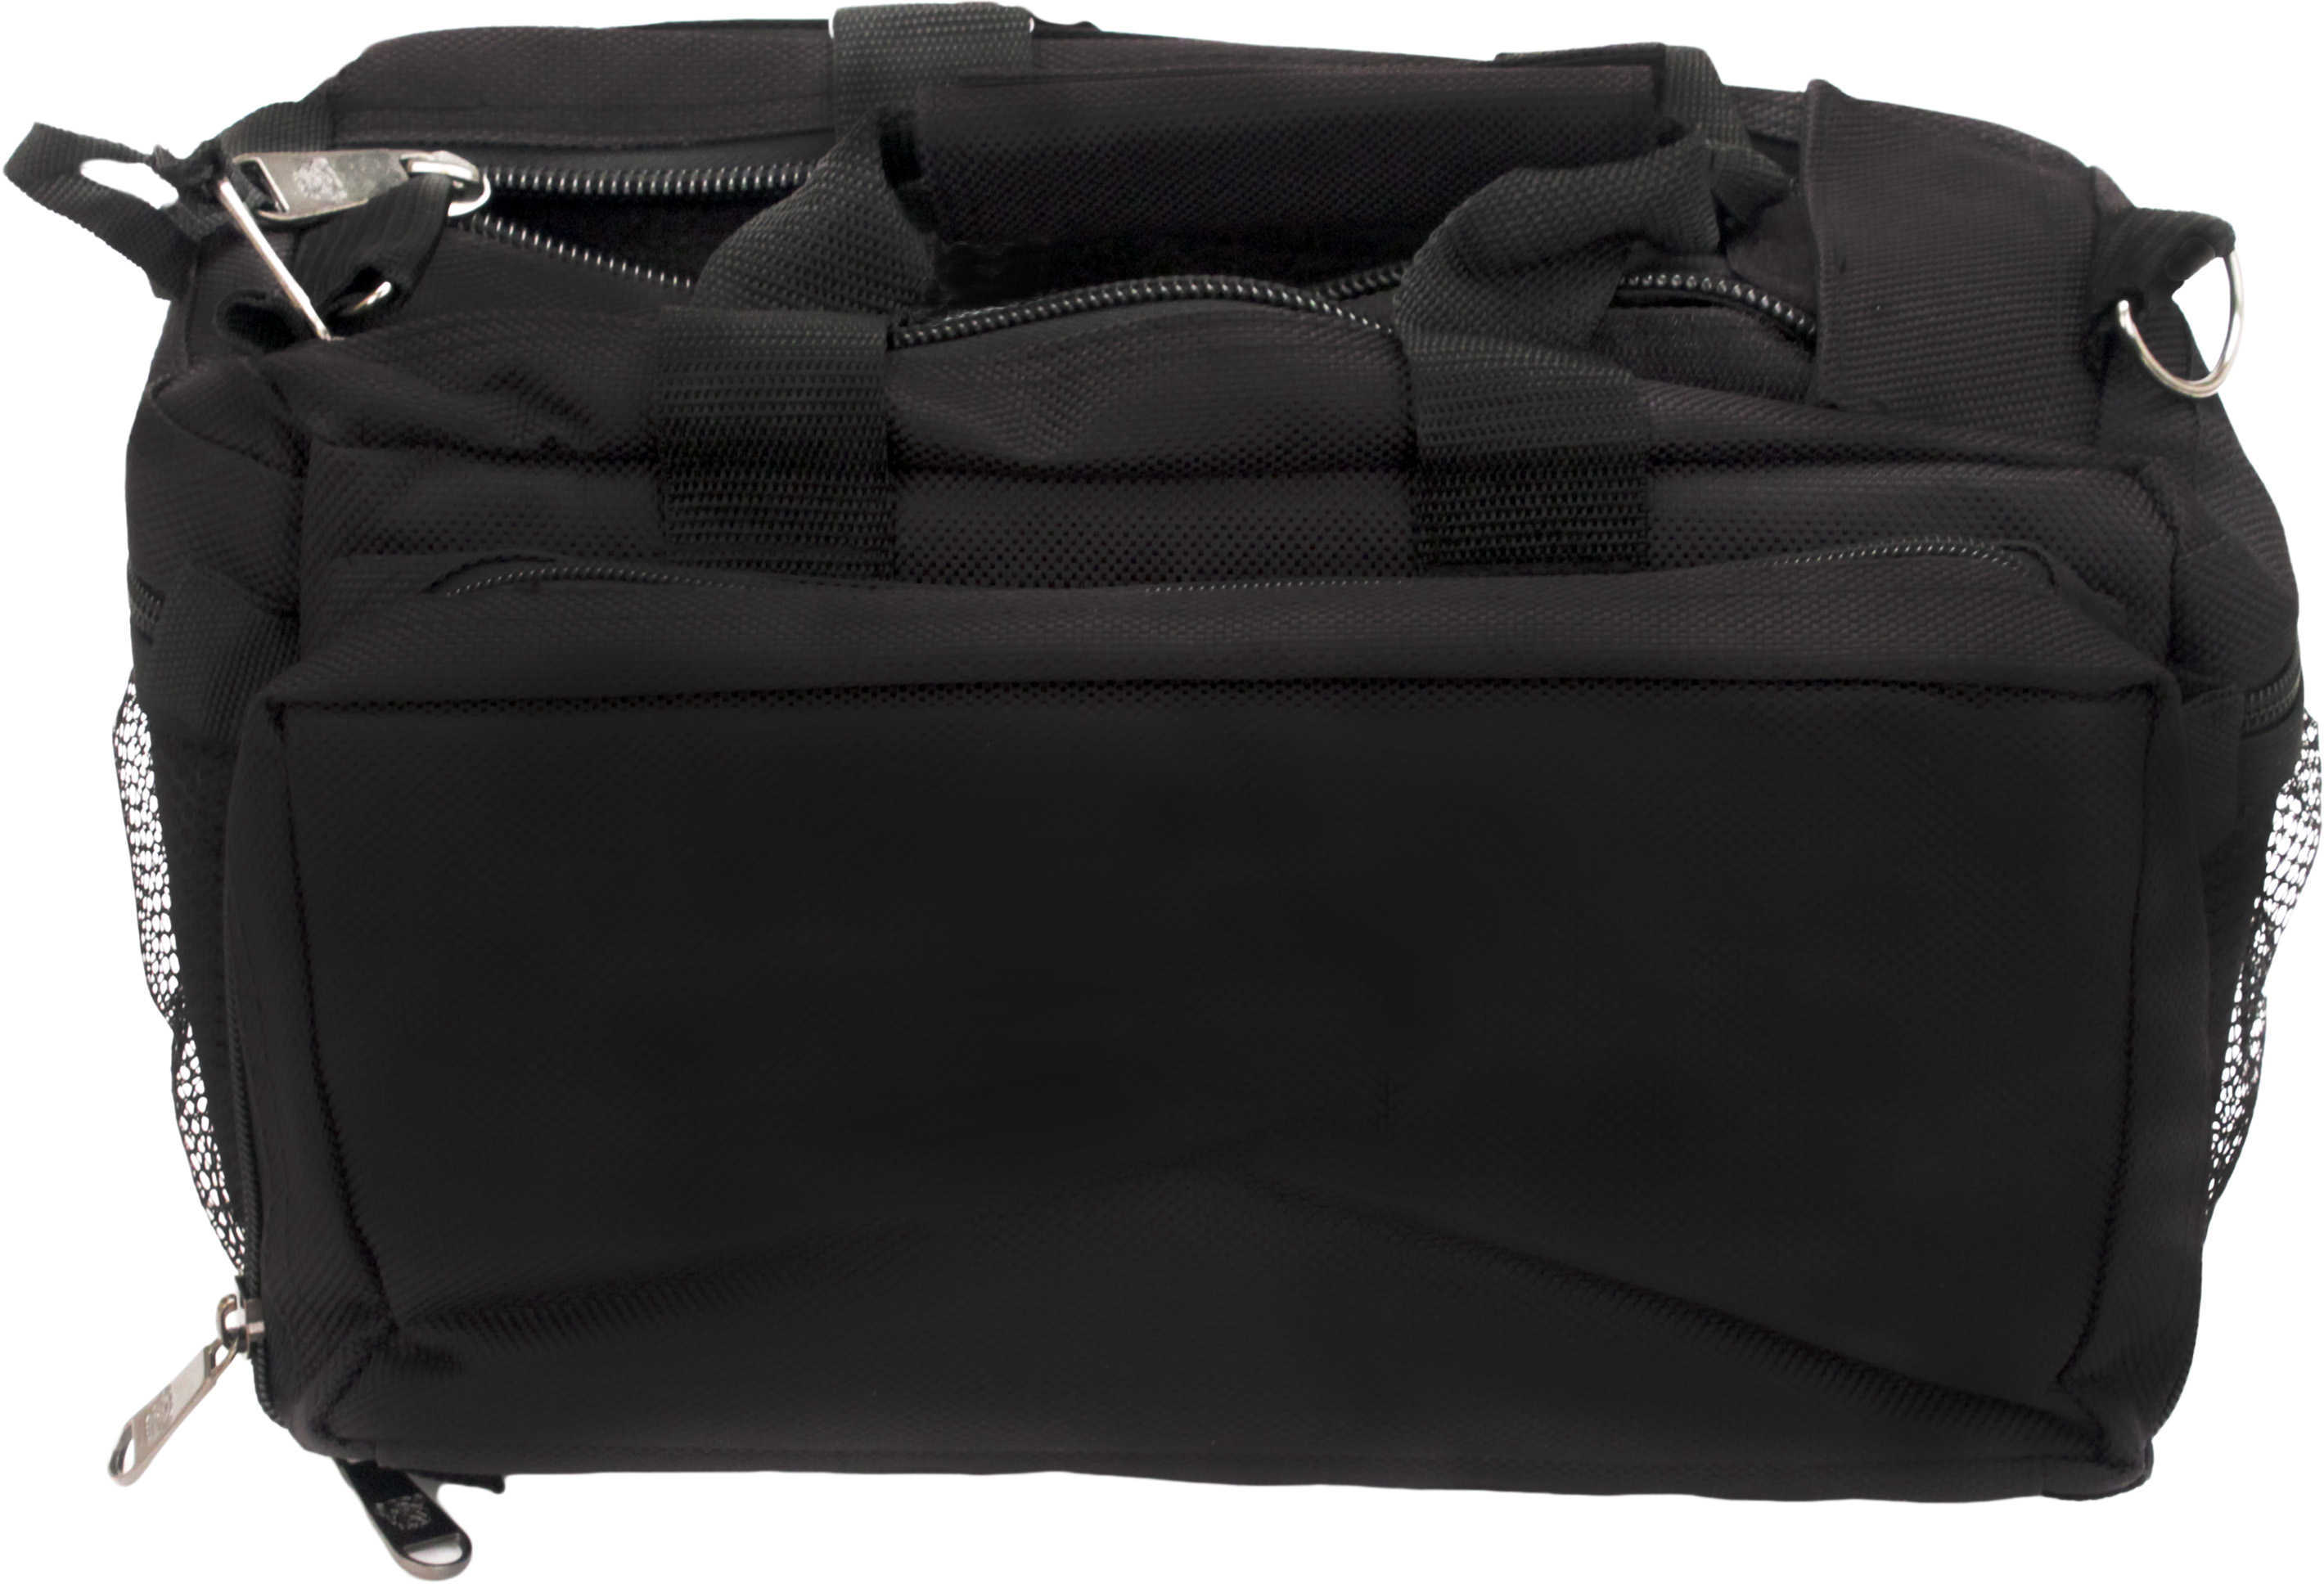 Bulldog BD910 Deluxe Range Bag with Strap Nylon 13" x 7" Black